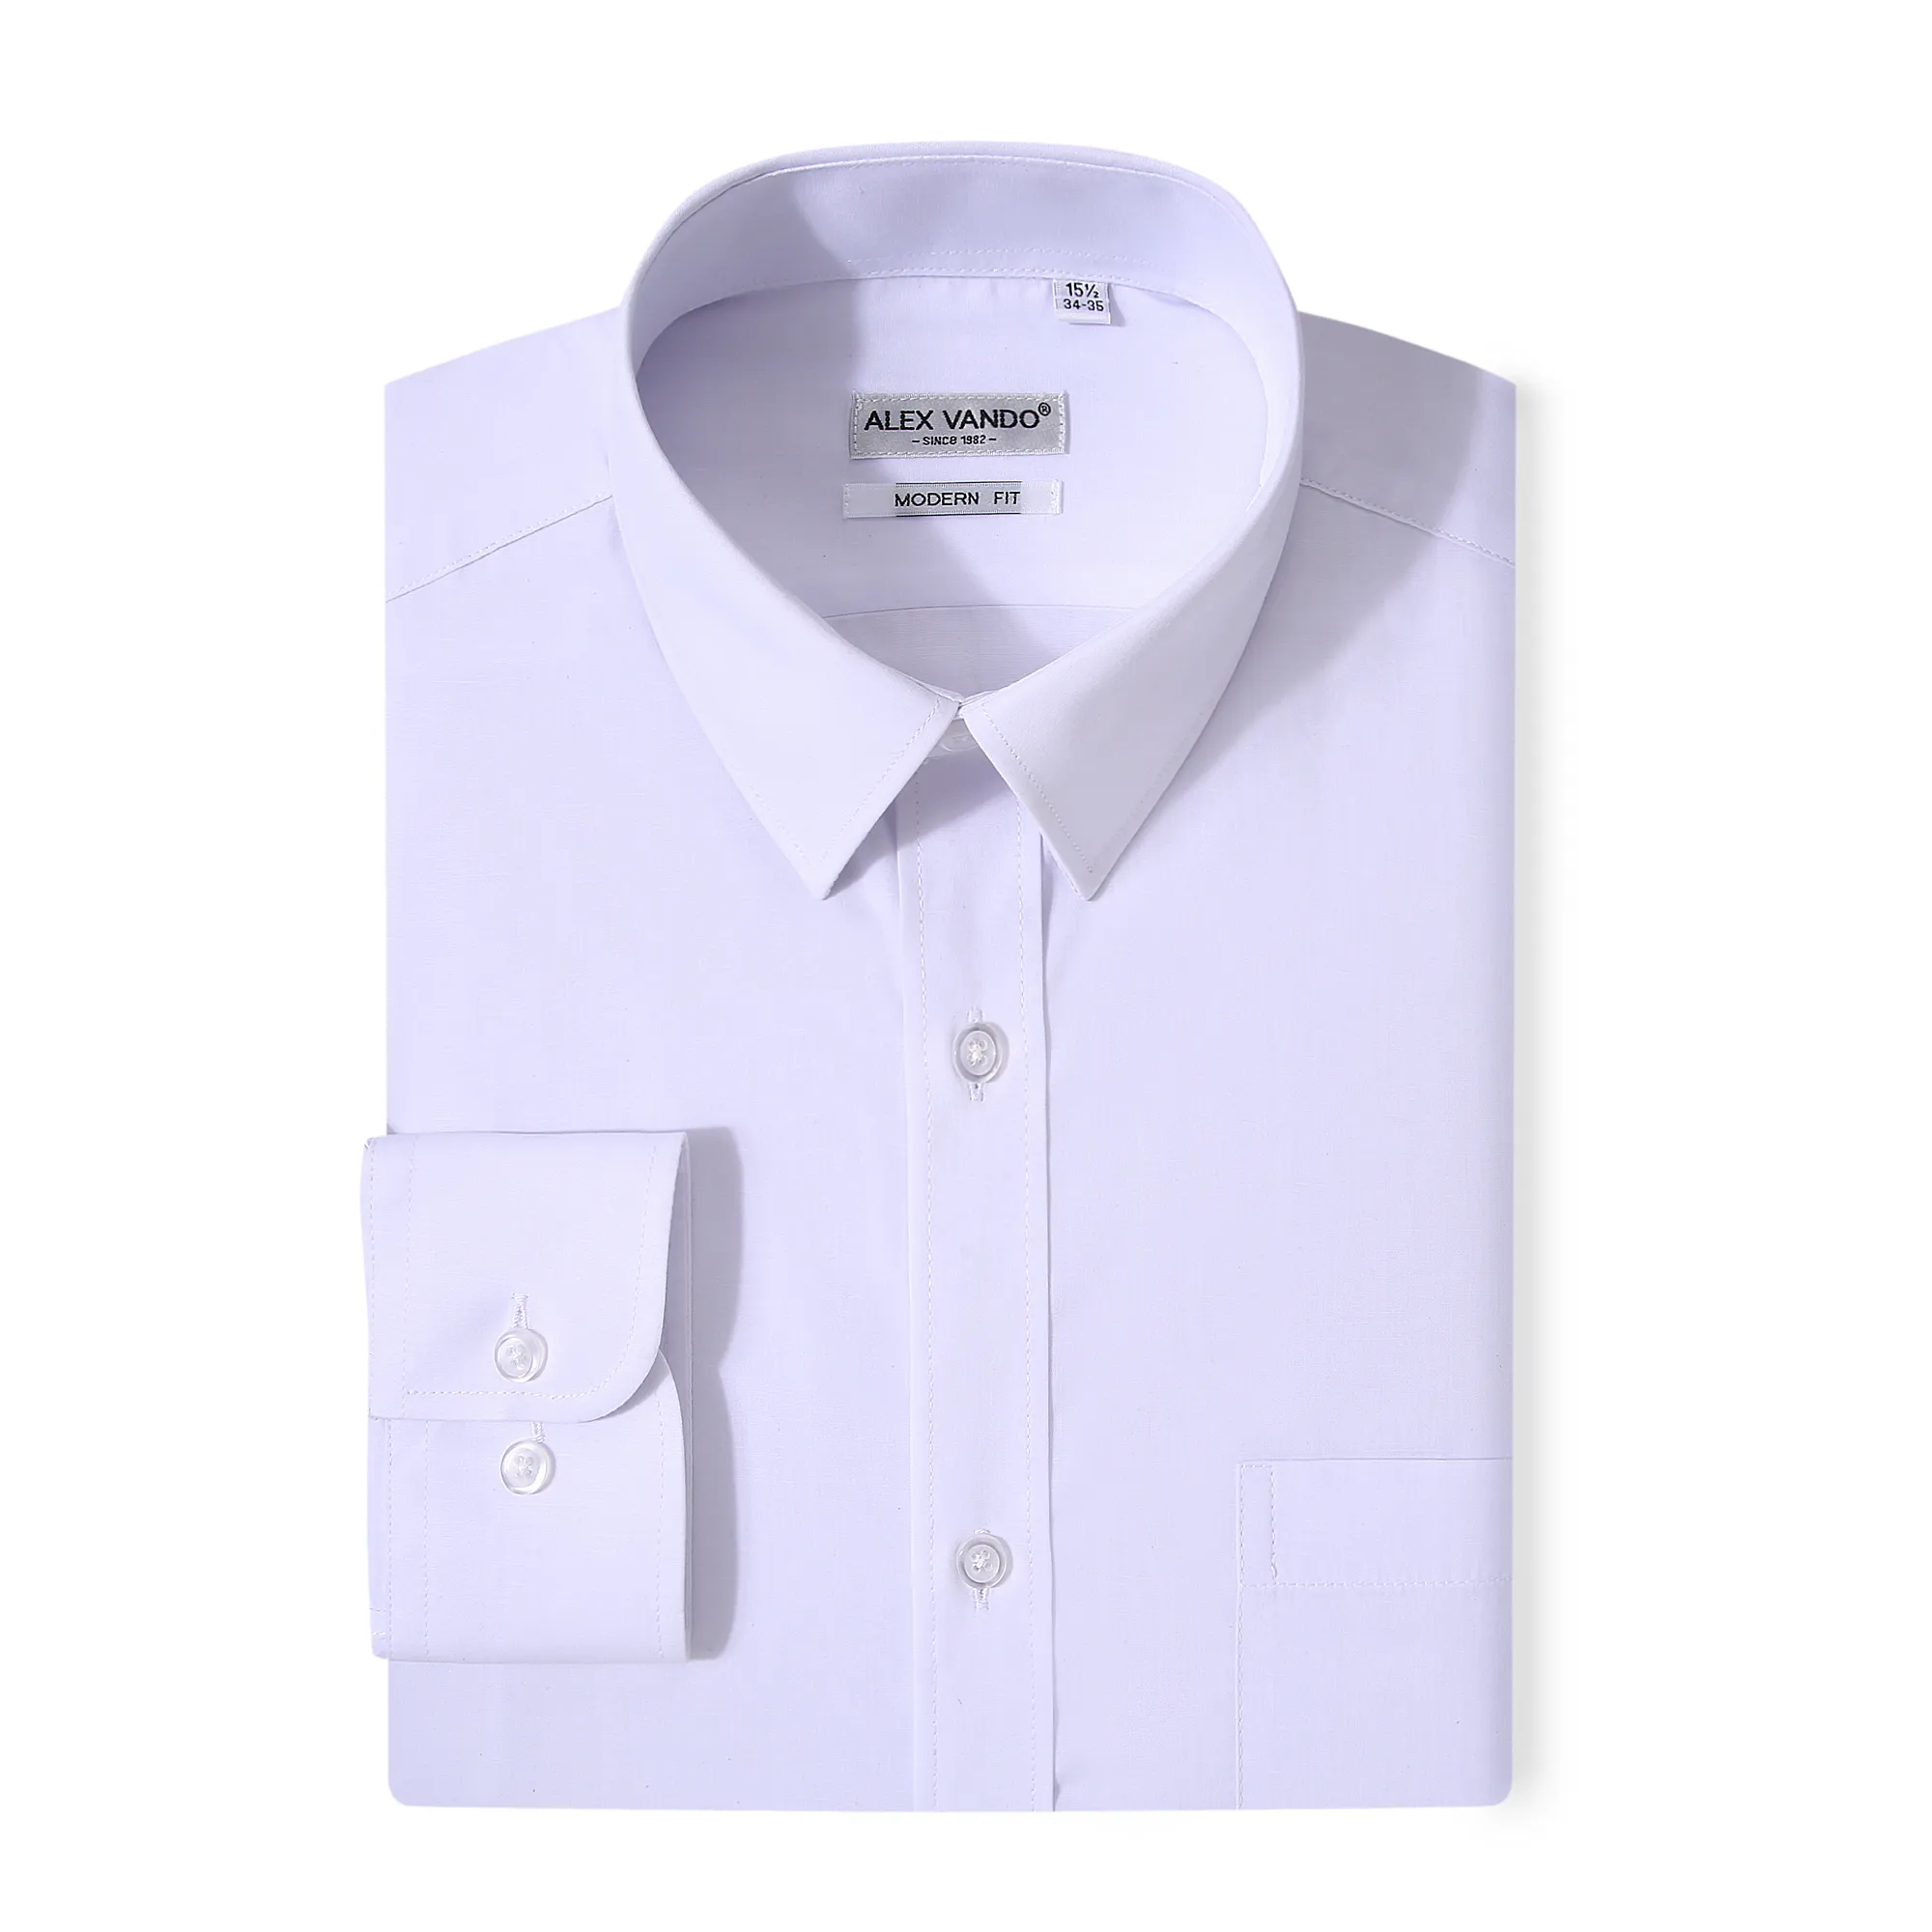 ODM 'OEM camisas مانغا larga الربيع اللباس قمصان طويلة الأكمام الأعمال الرسمي التعادل مخصص الجملة سليم صالح قميص للرجال